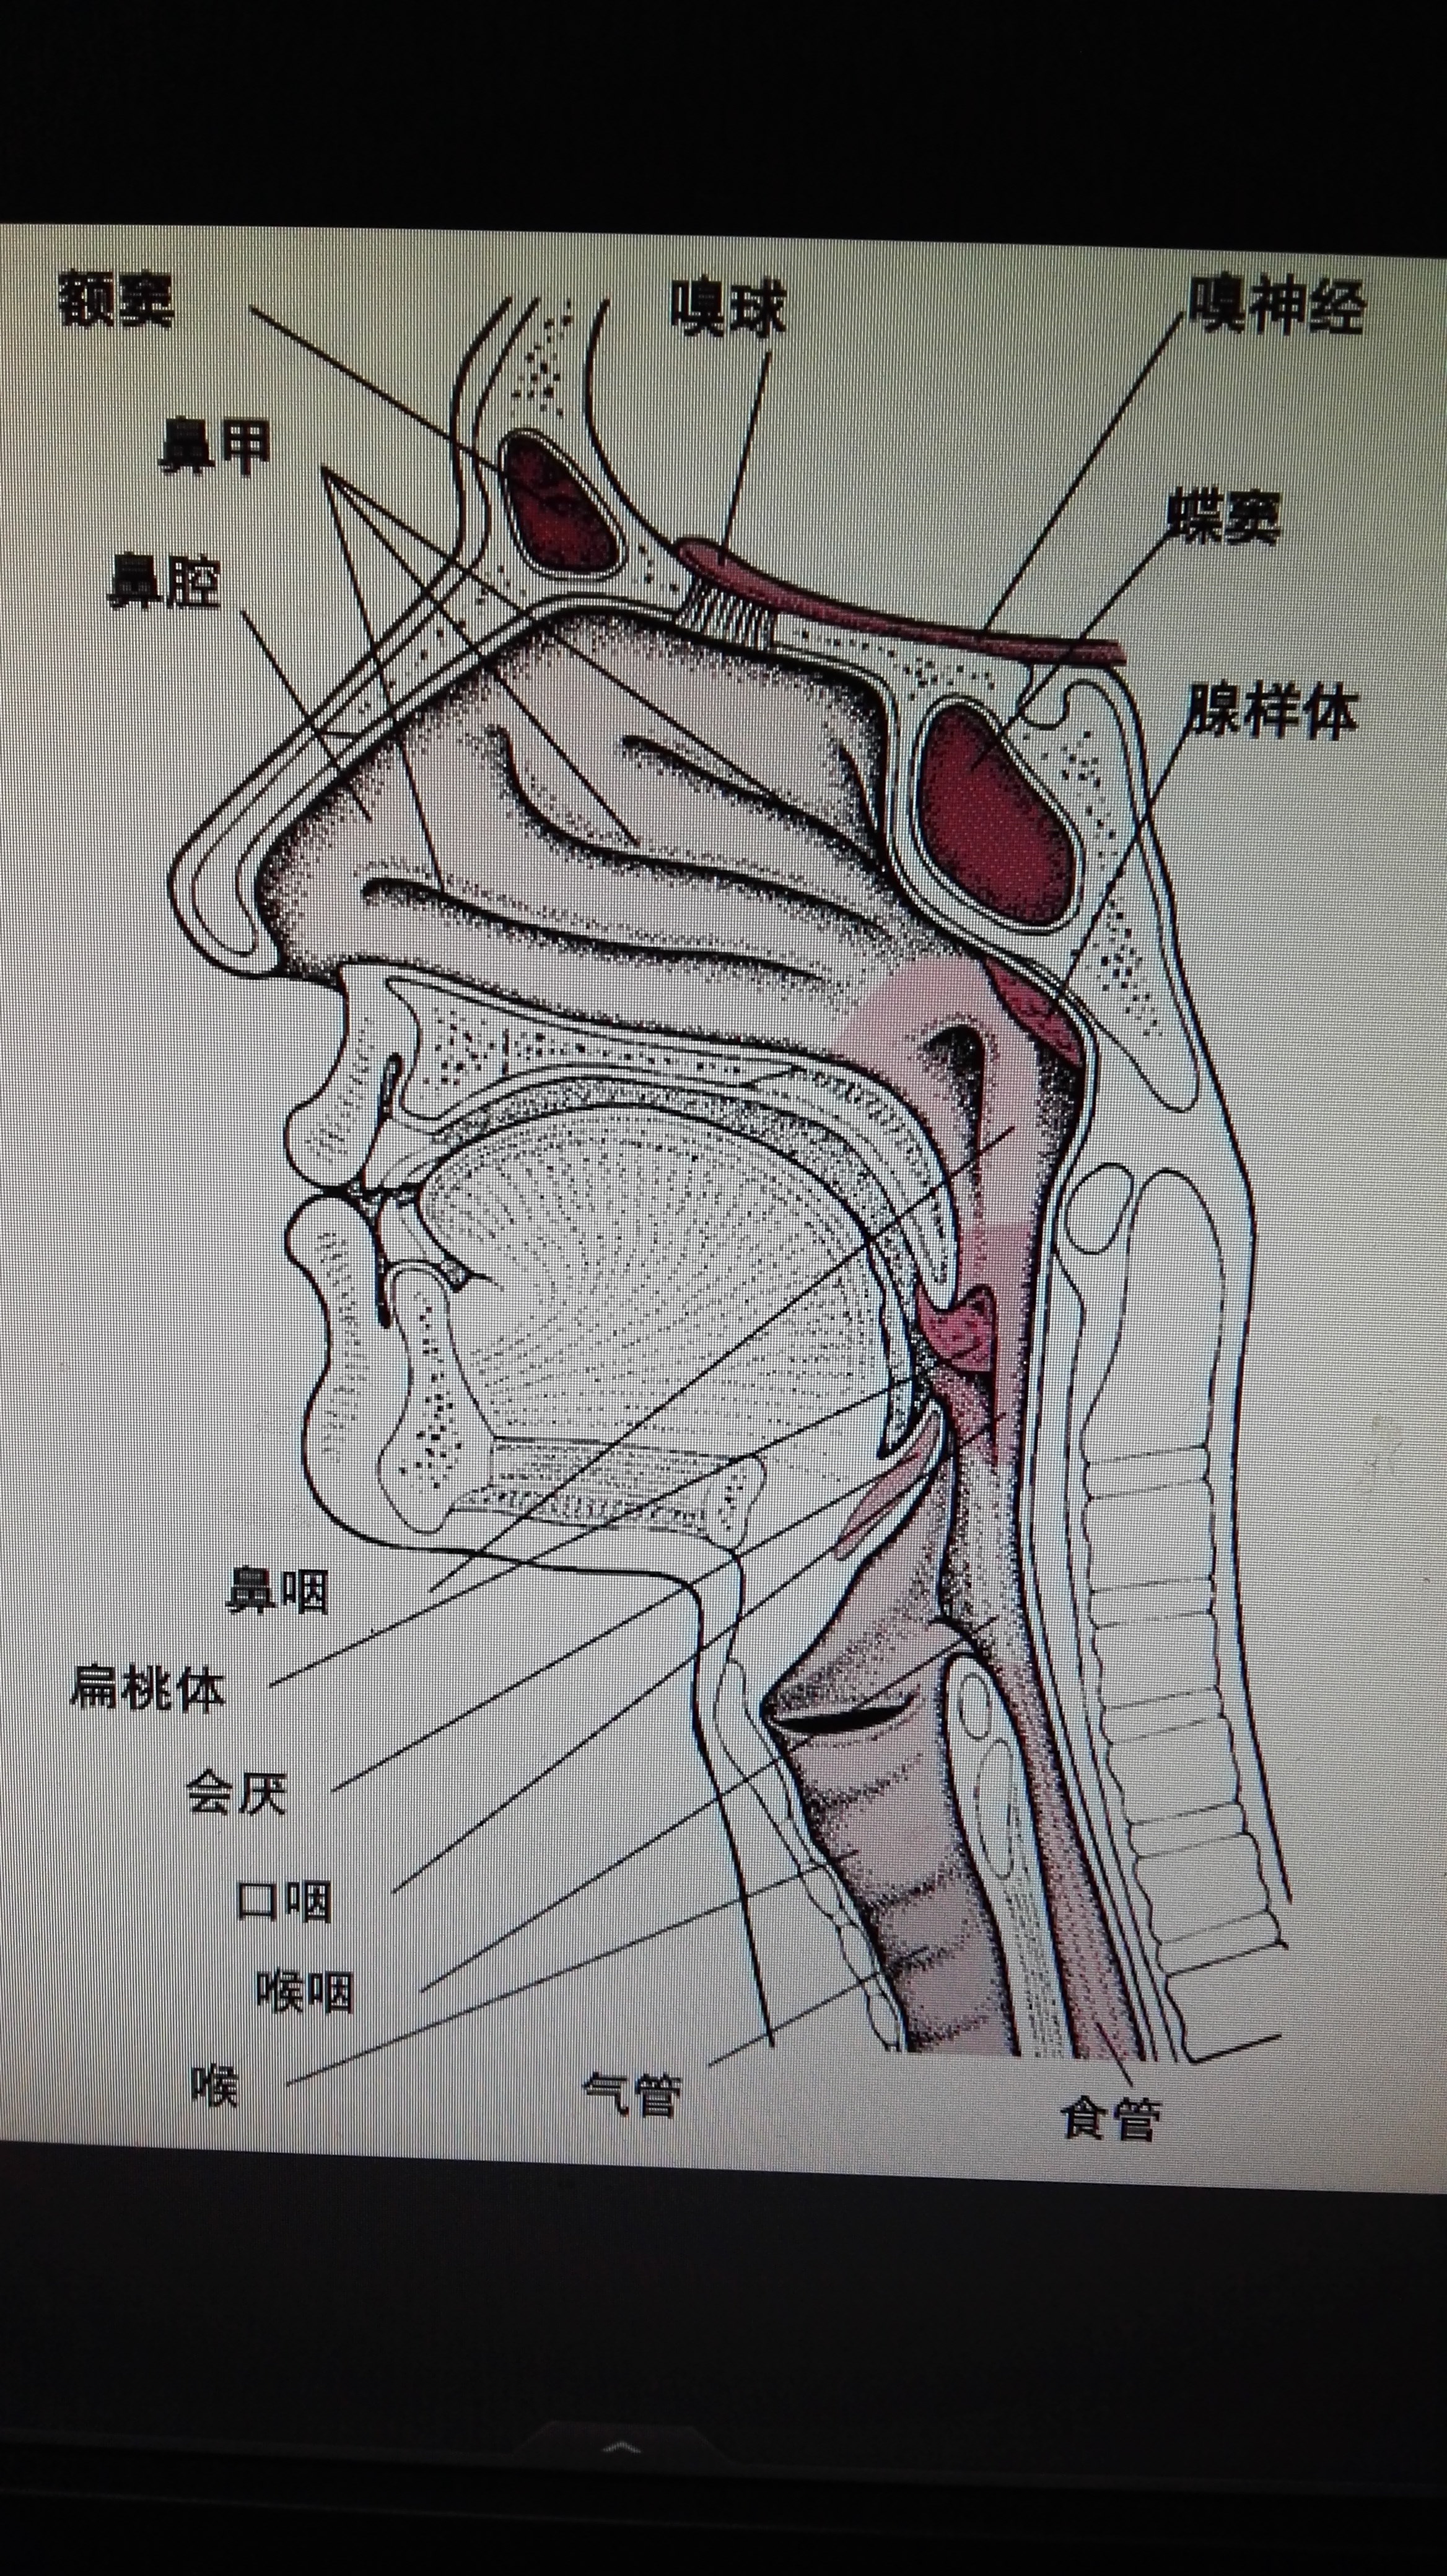 扁桃体位置图甲状腺图片